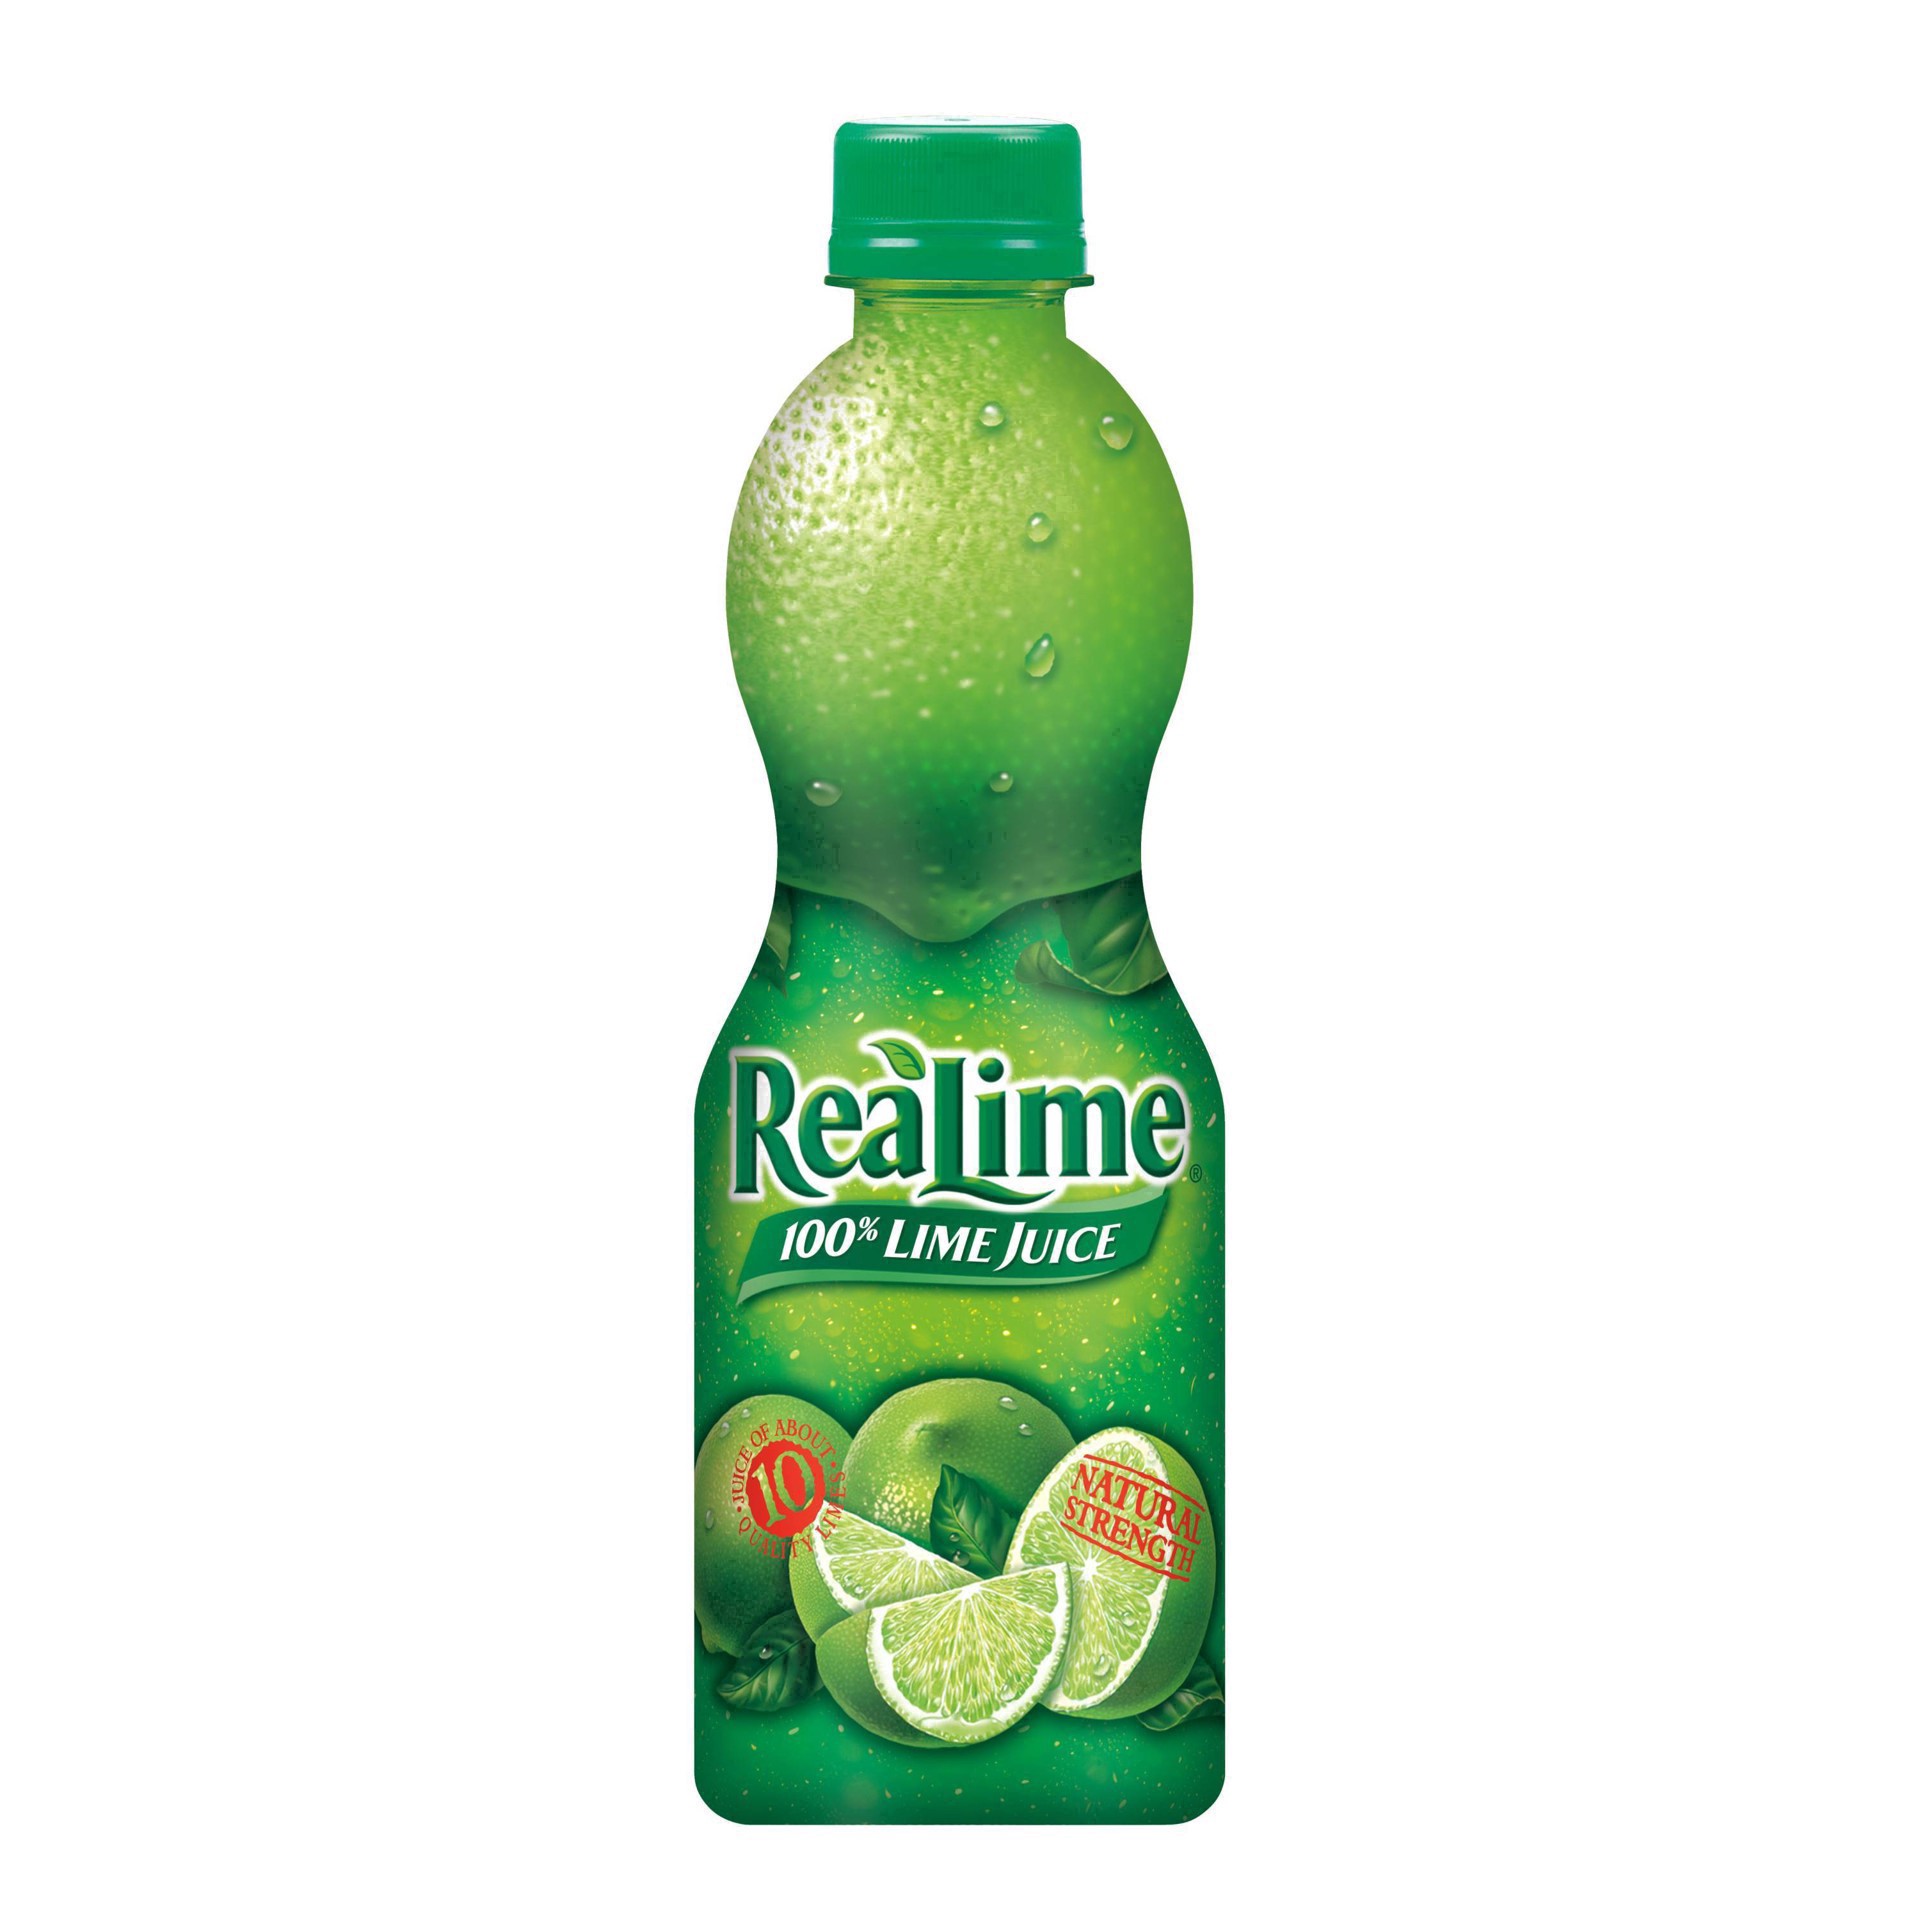 slide 28 of 68, ReaLime 100% Lime Juice Bottle, 15 fl oz